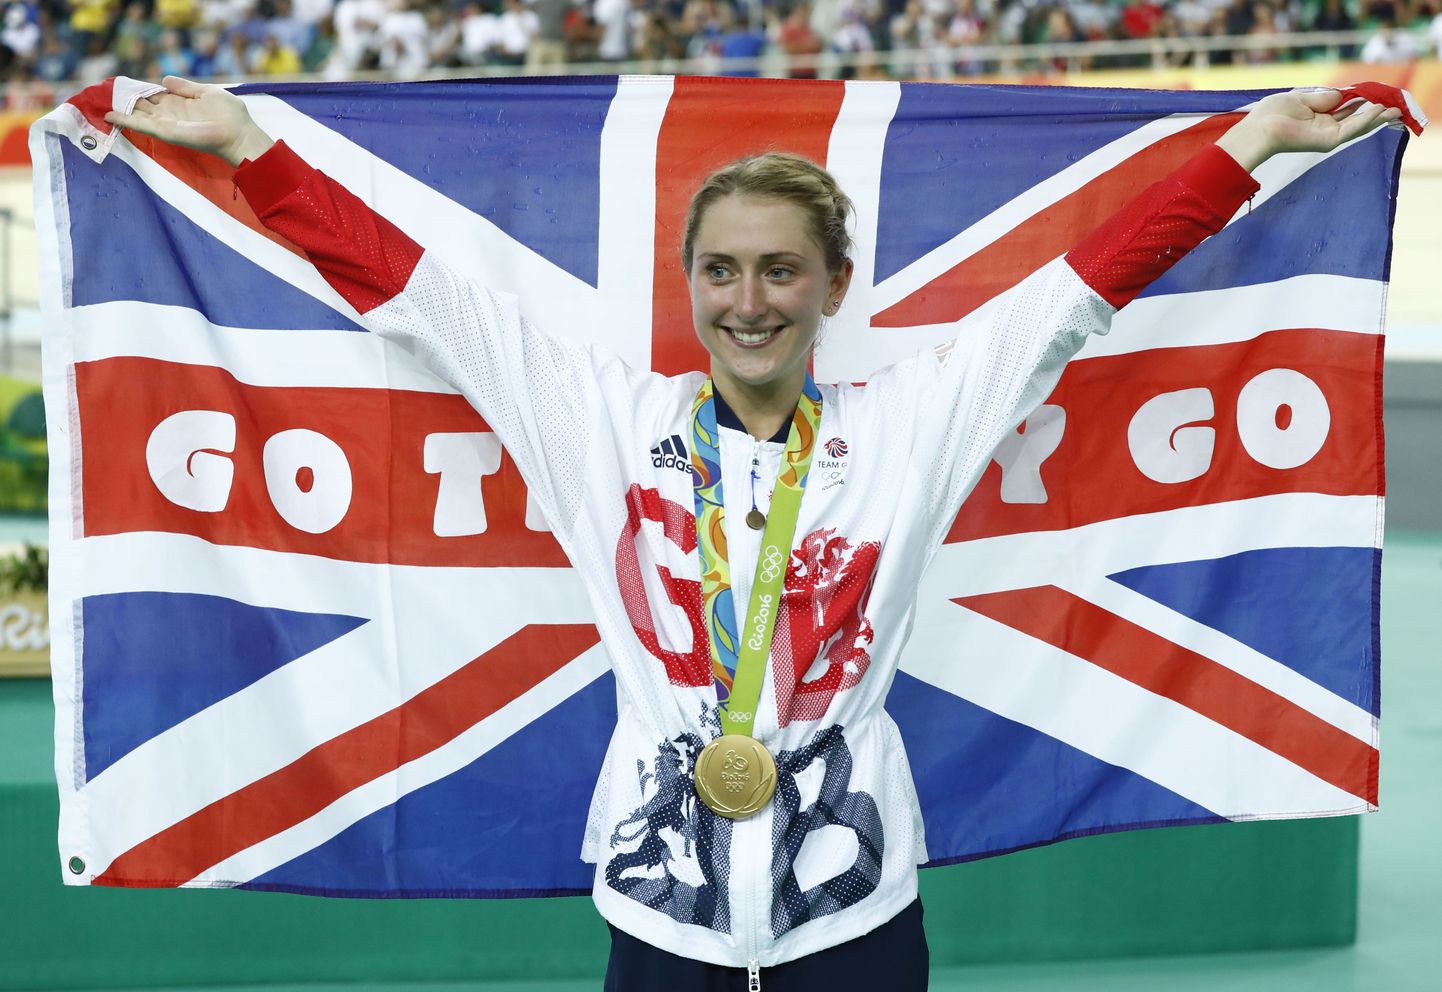 Laura Trott on Rio olümpialt võitnud kaks kuldmedalit